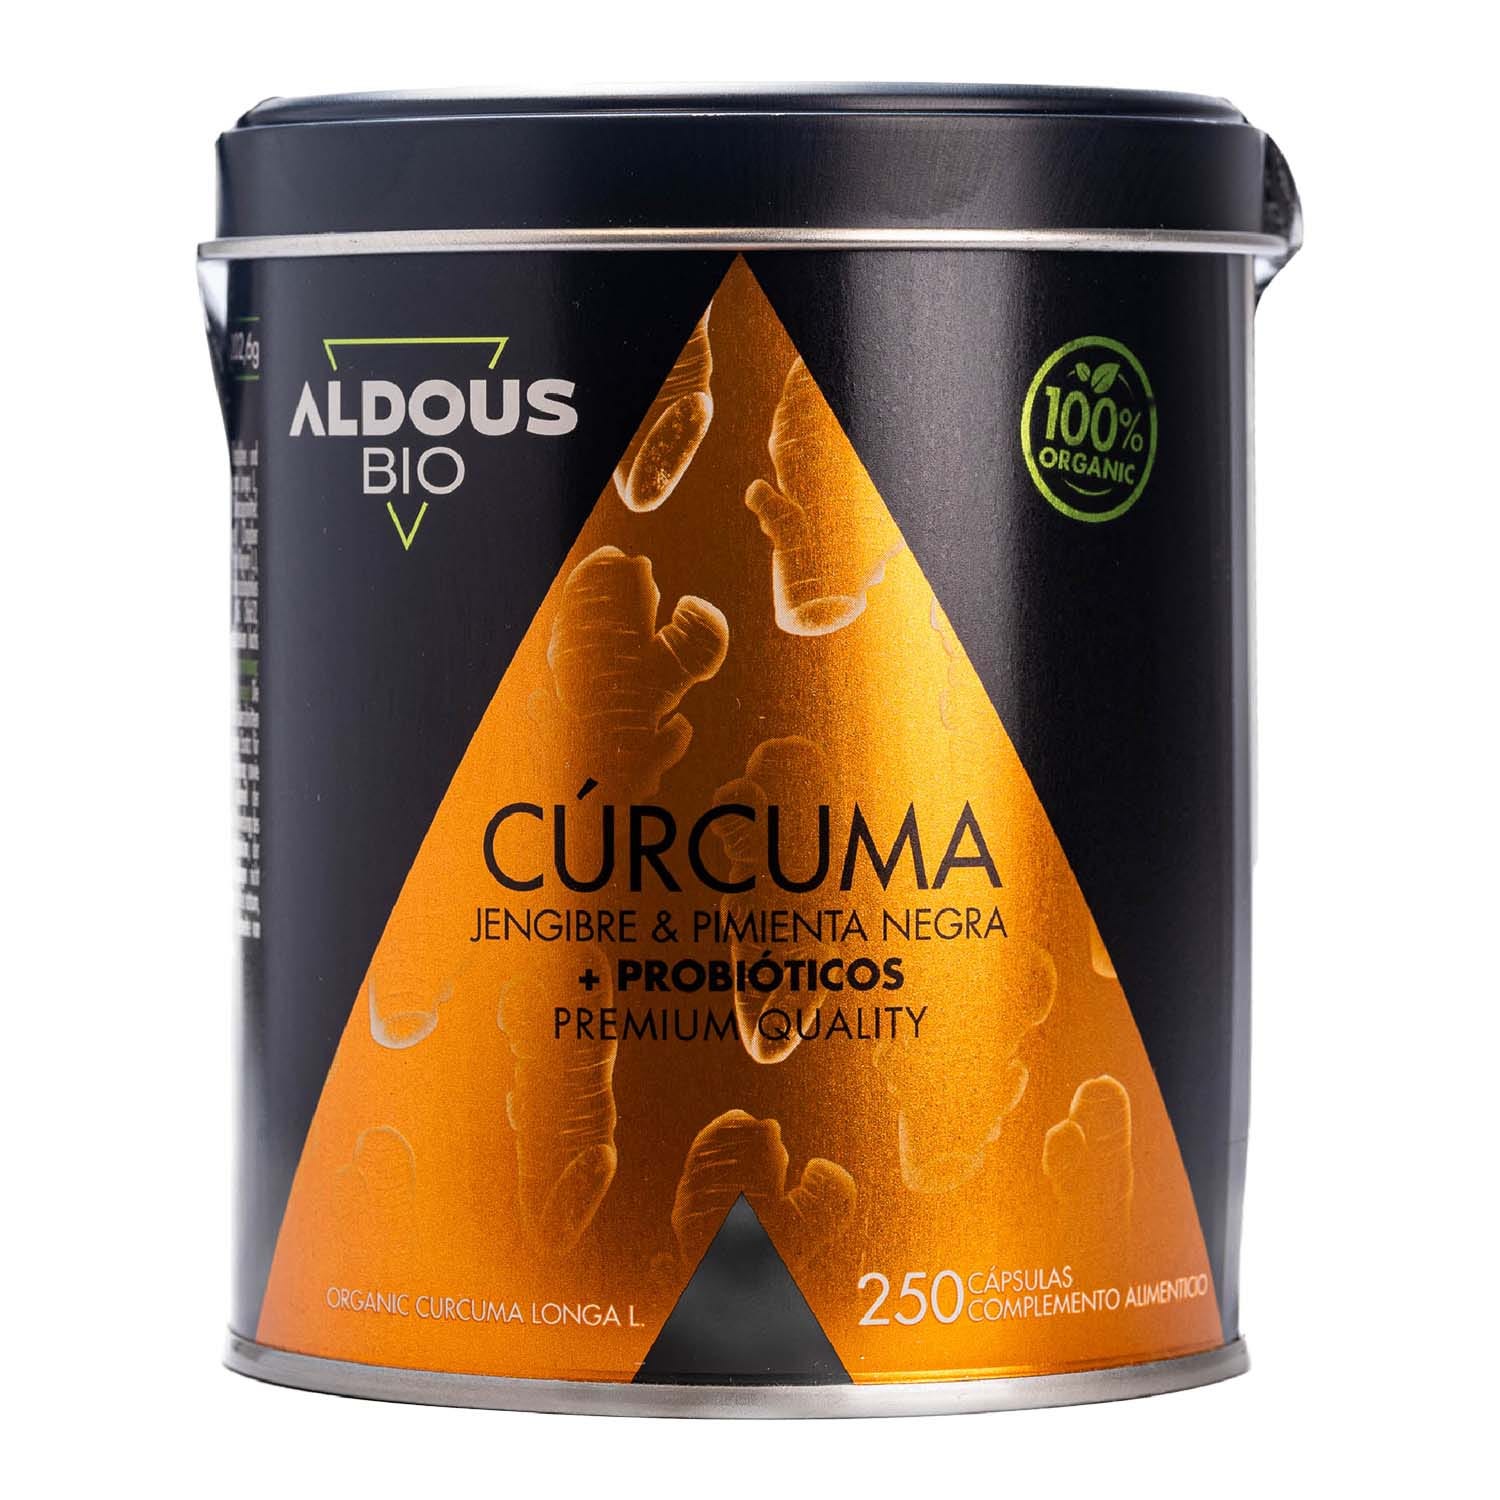 Aldous Bio - ▶️¡Única Cúrcuma enriquecida con probióticos!◀️ . 👉Nuestras  cápsulas de Cúrcuma tuvieron un recibimiento fantástico el año pasado y  este 2021 es Top ventas en nuestra web. Mucha gente se